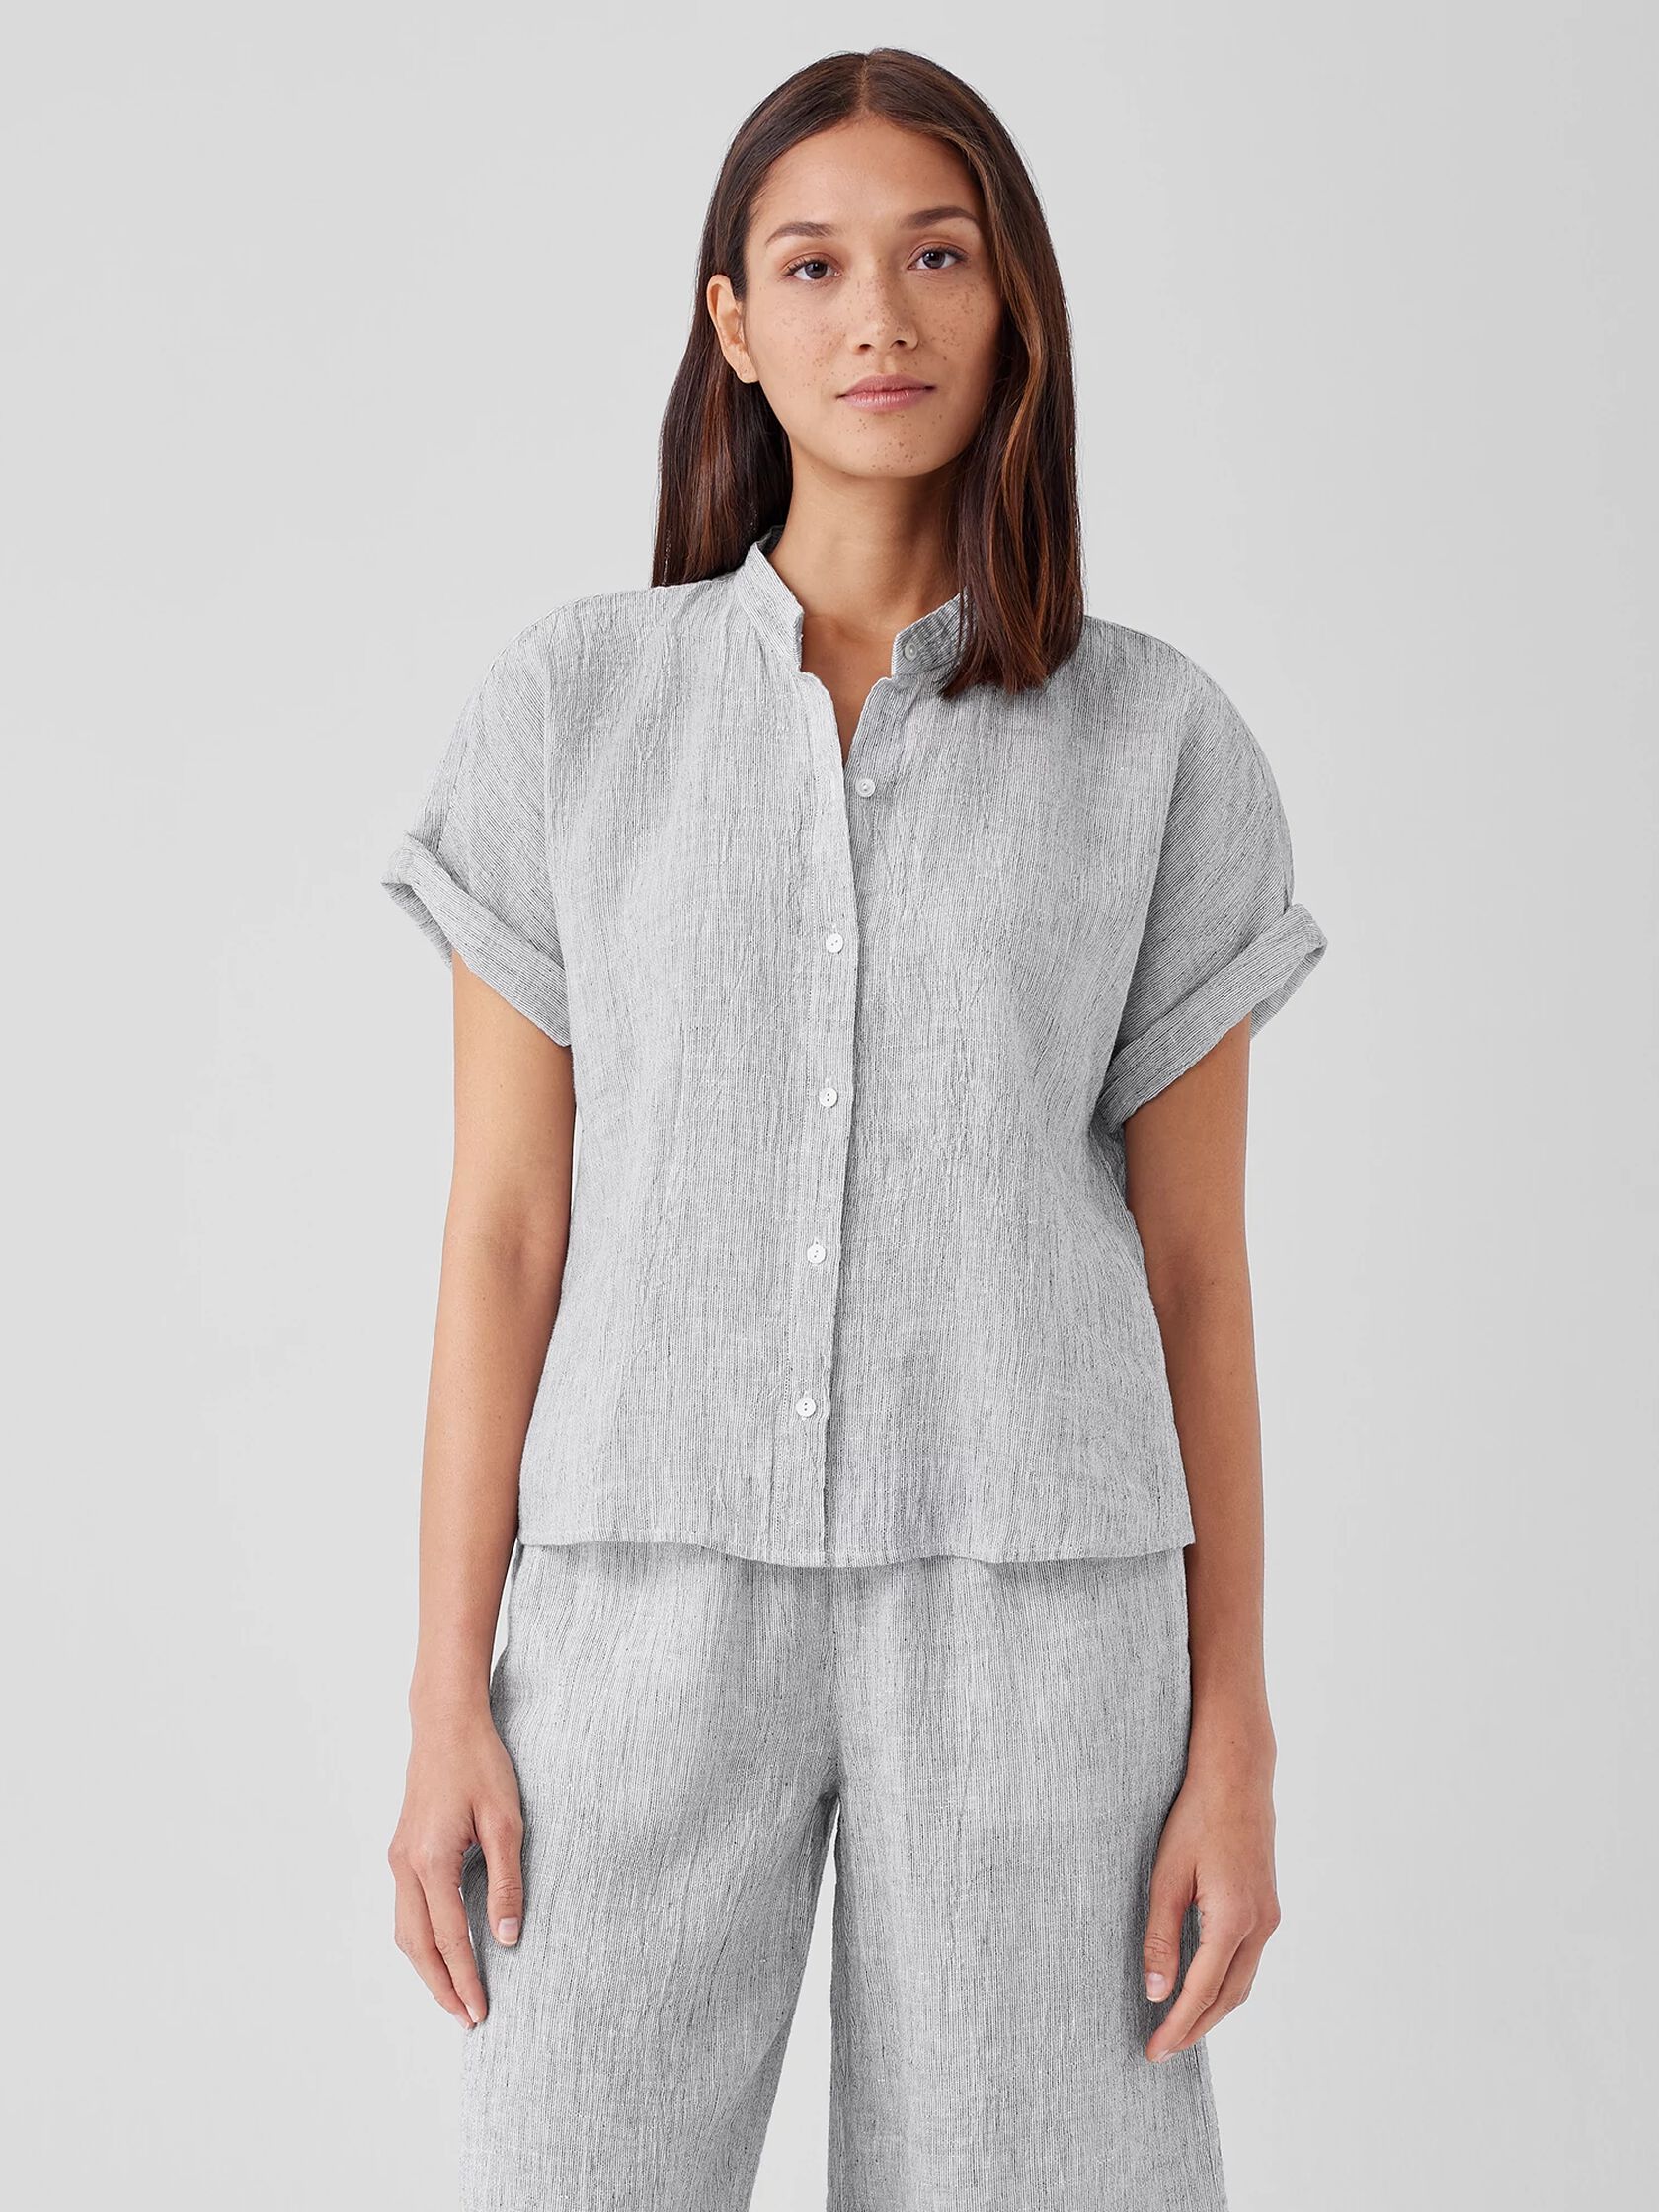 Crinkled Organic Linen Stripe Short-Sleeve Shirt